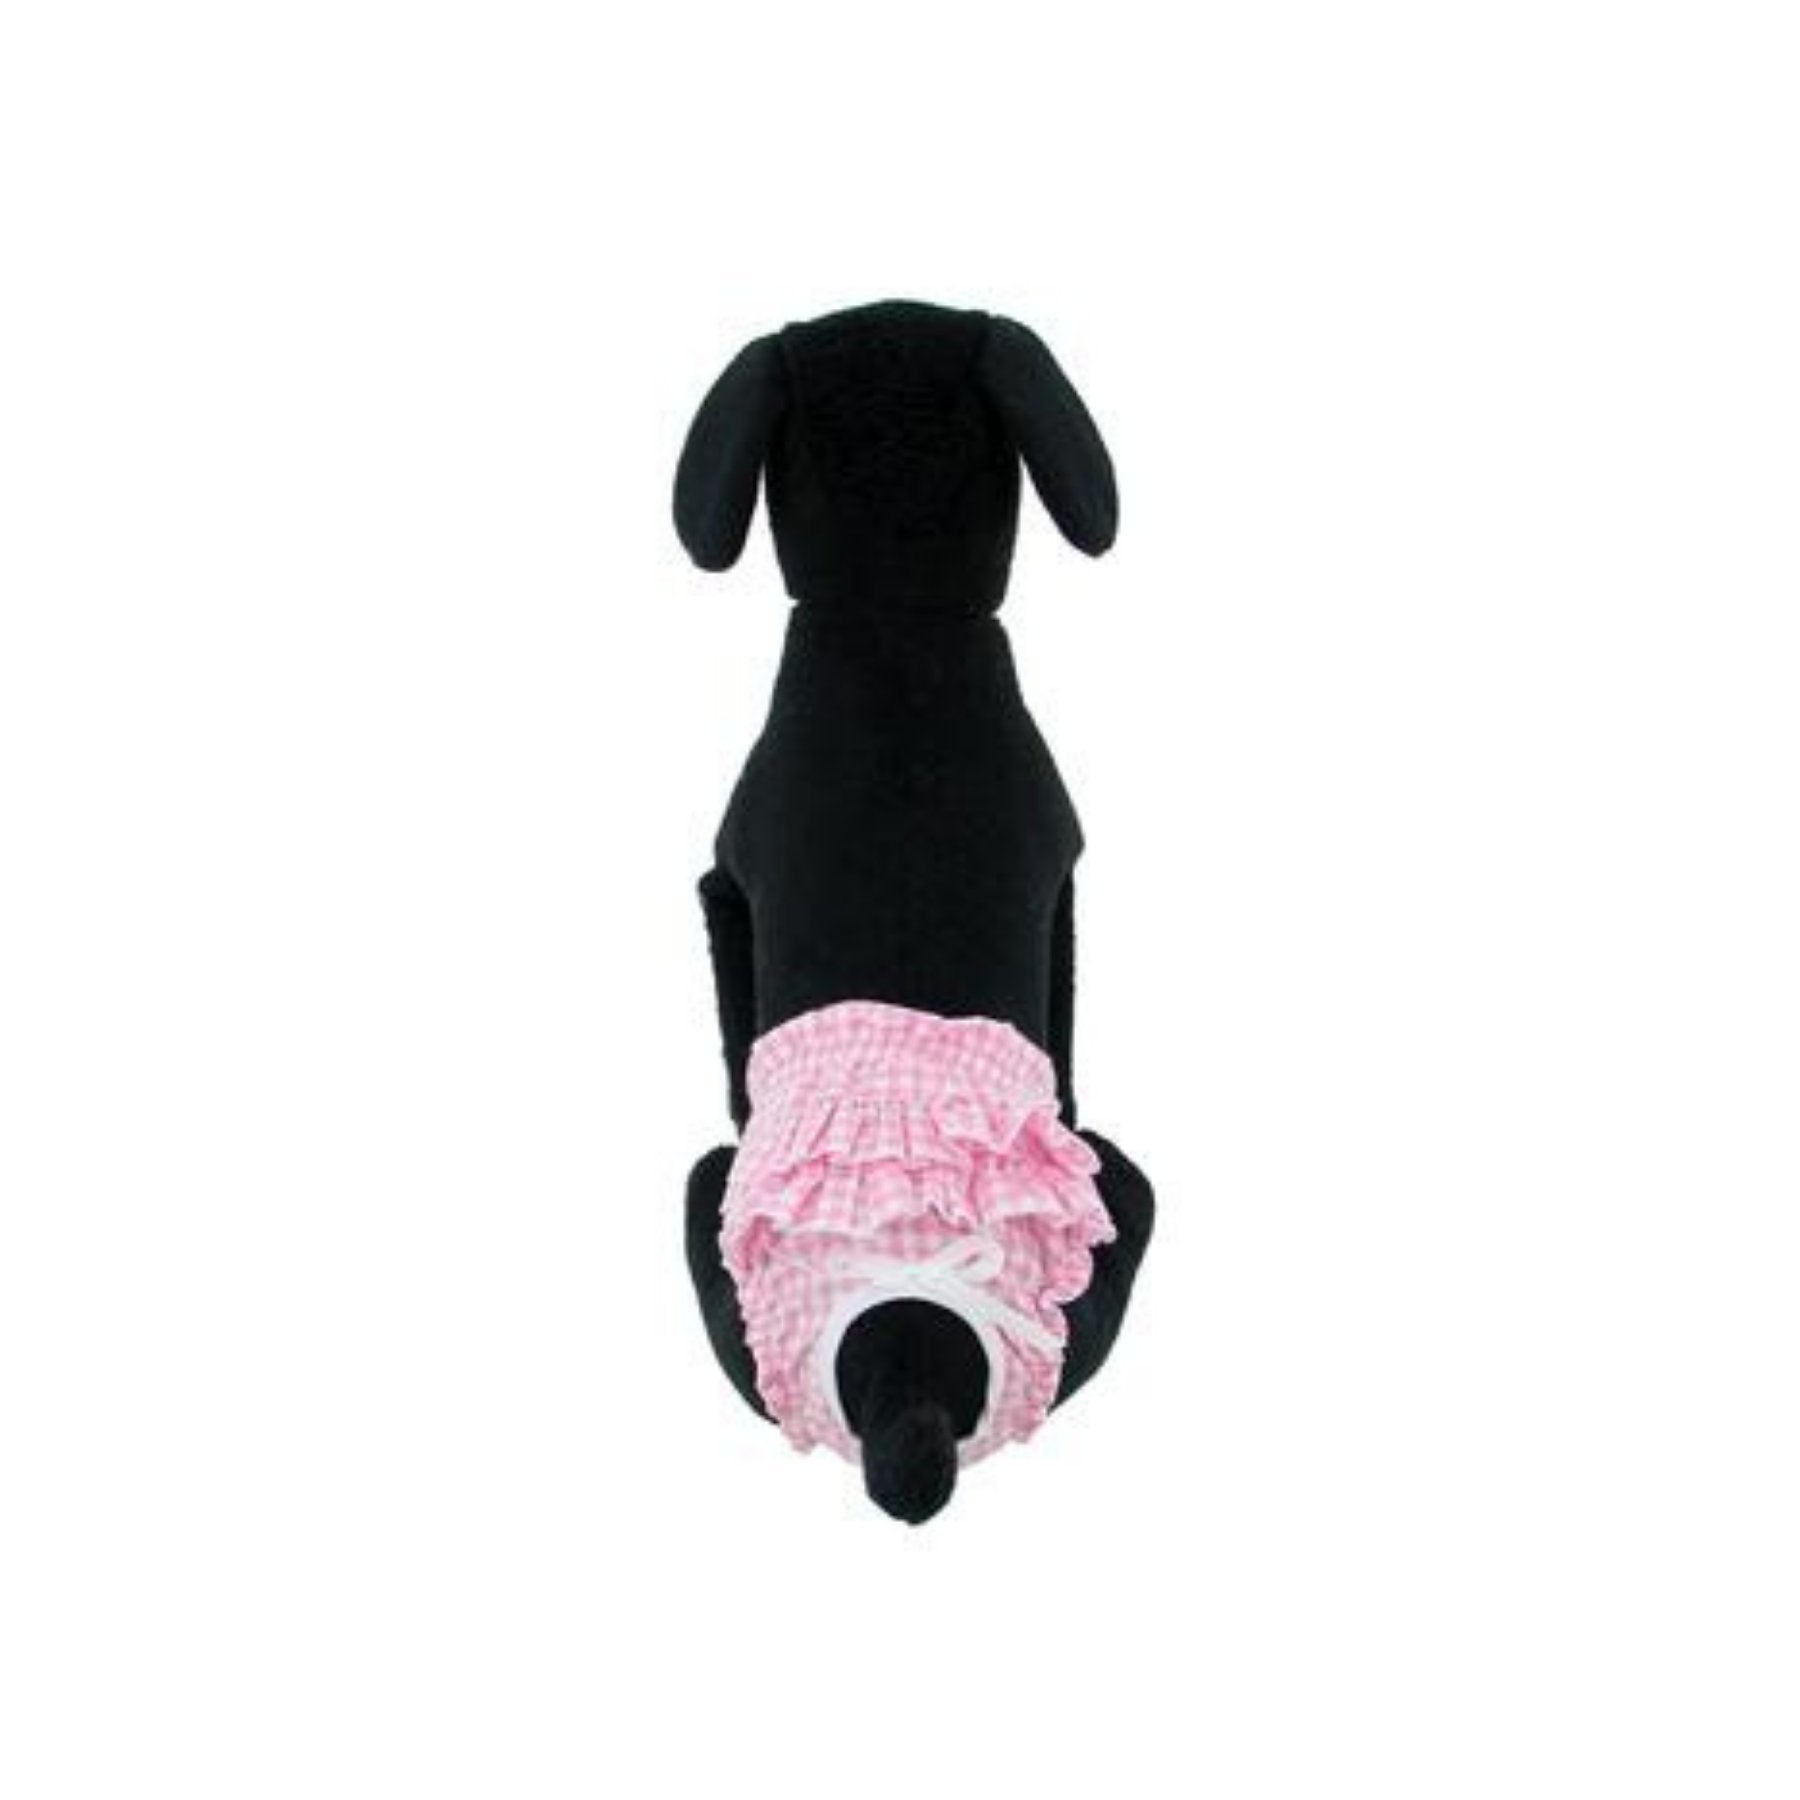 Ruffled Pink Gingham Dog Panties - Pooch Luxury